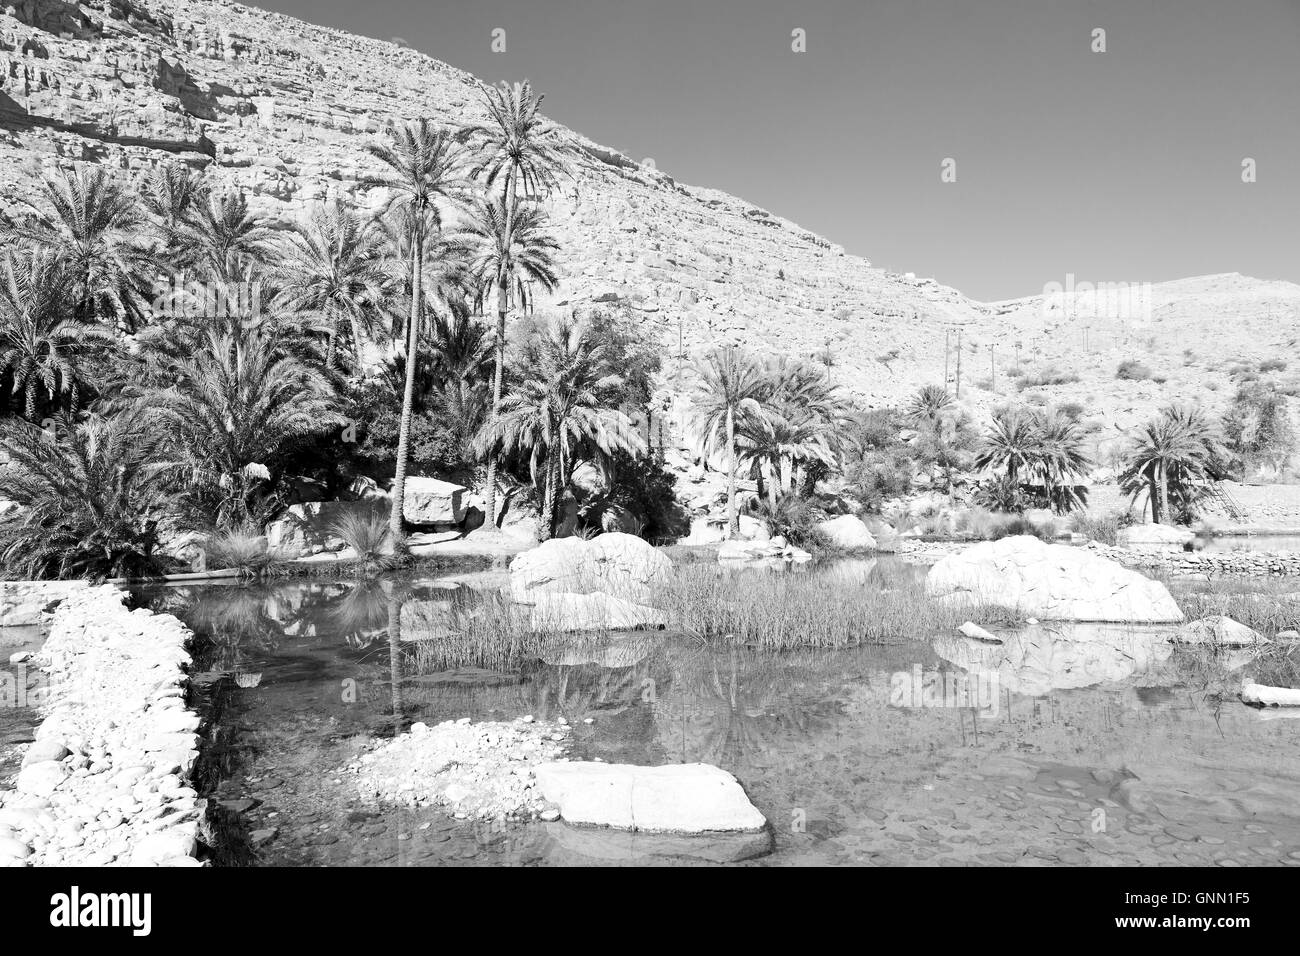 Omán montaña vieja y agua en canyon wadi oasi paraíso natural Foto de stock